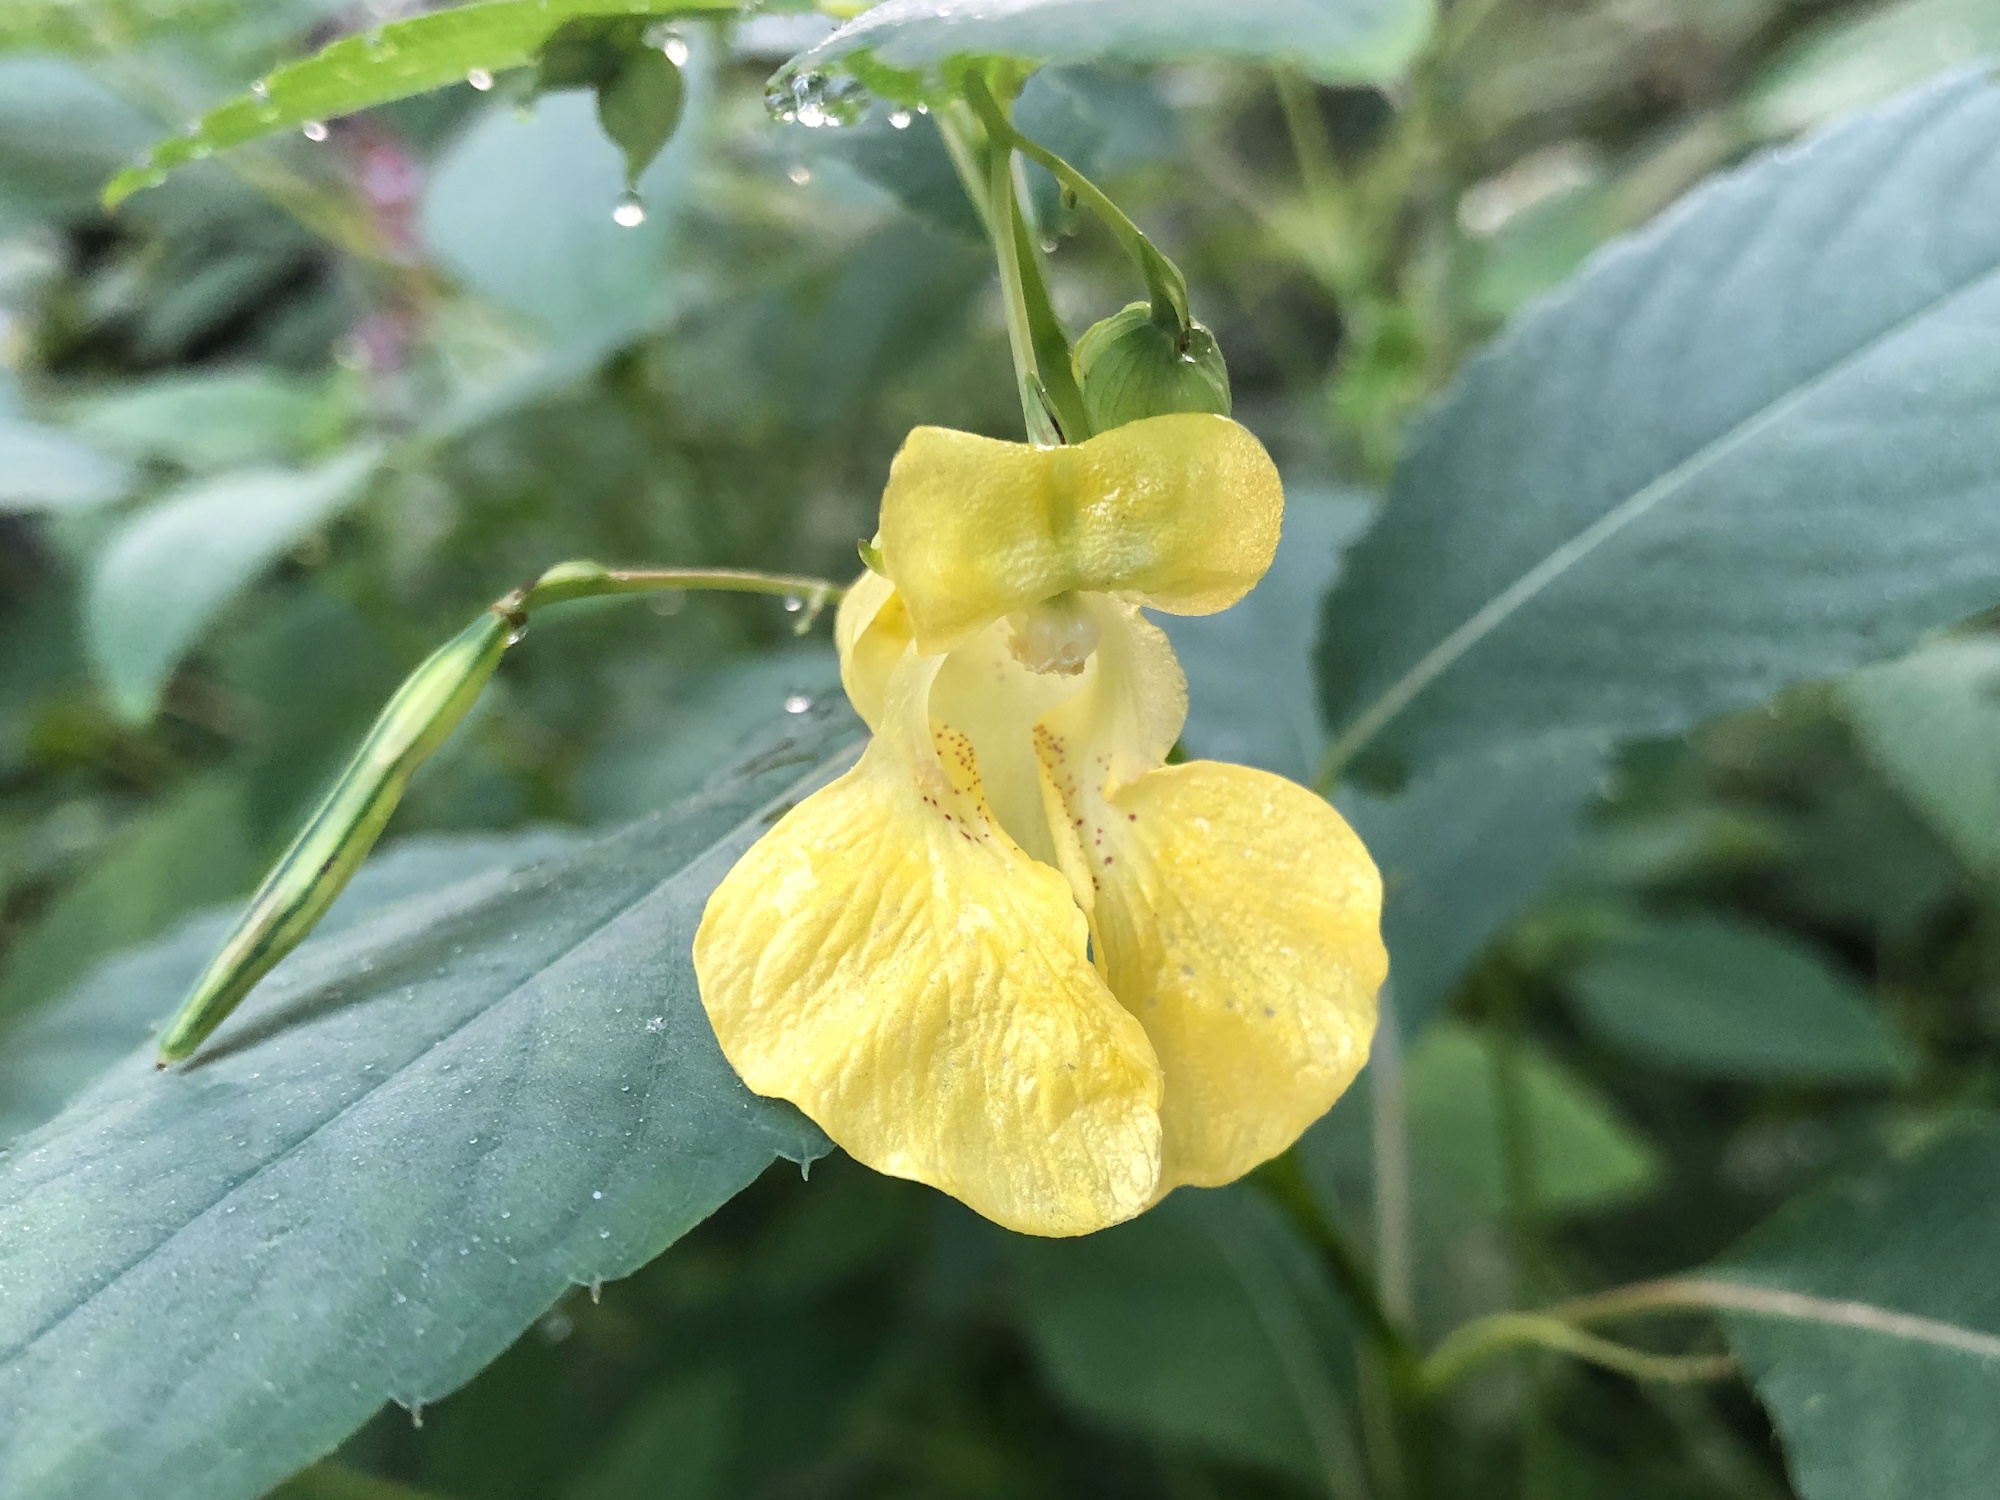 Yellow Jewelweed in the Oak Savanna on July 24, 2019.